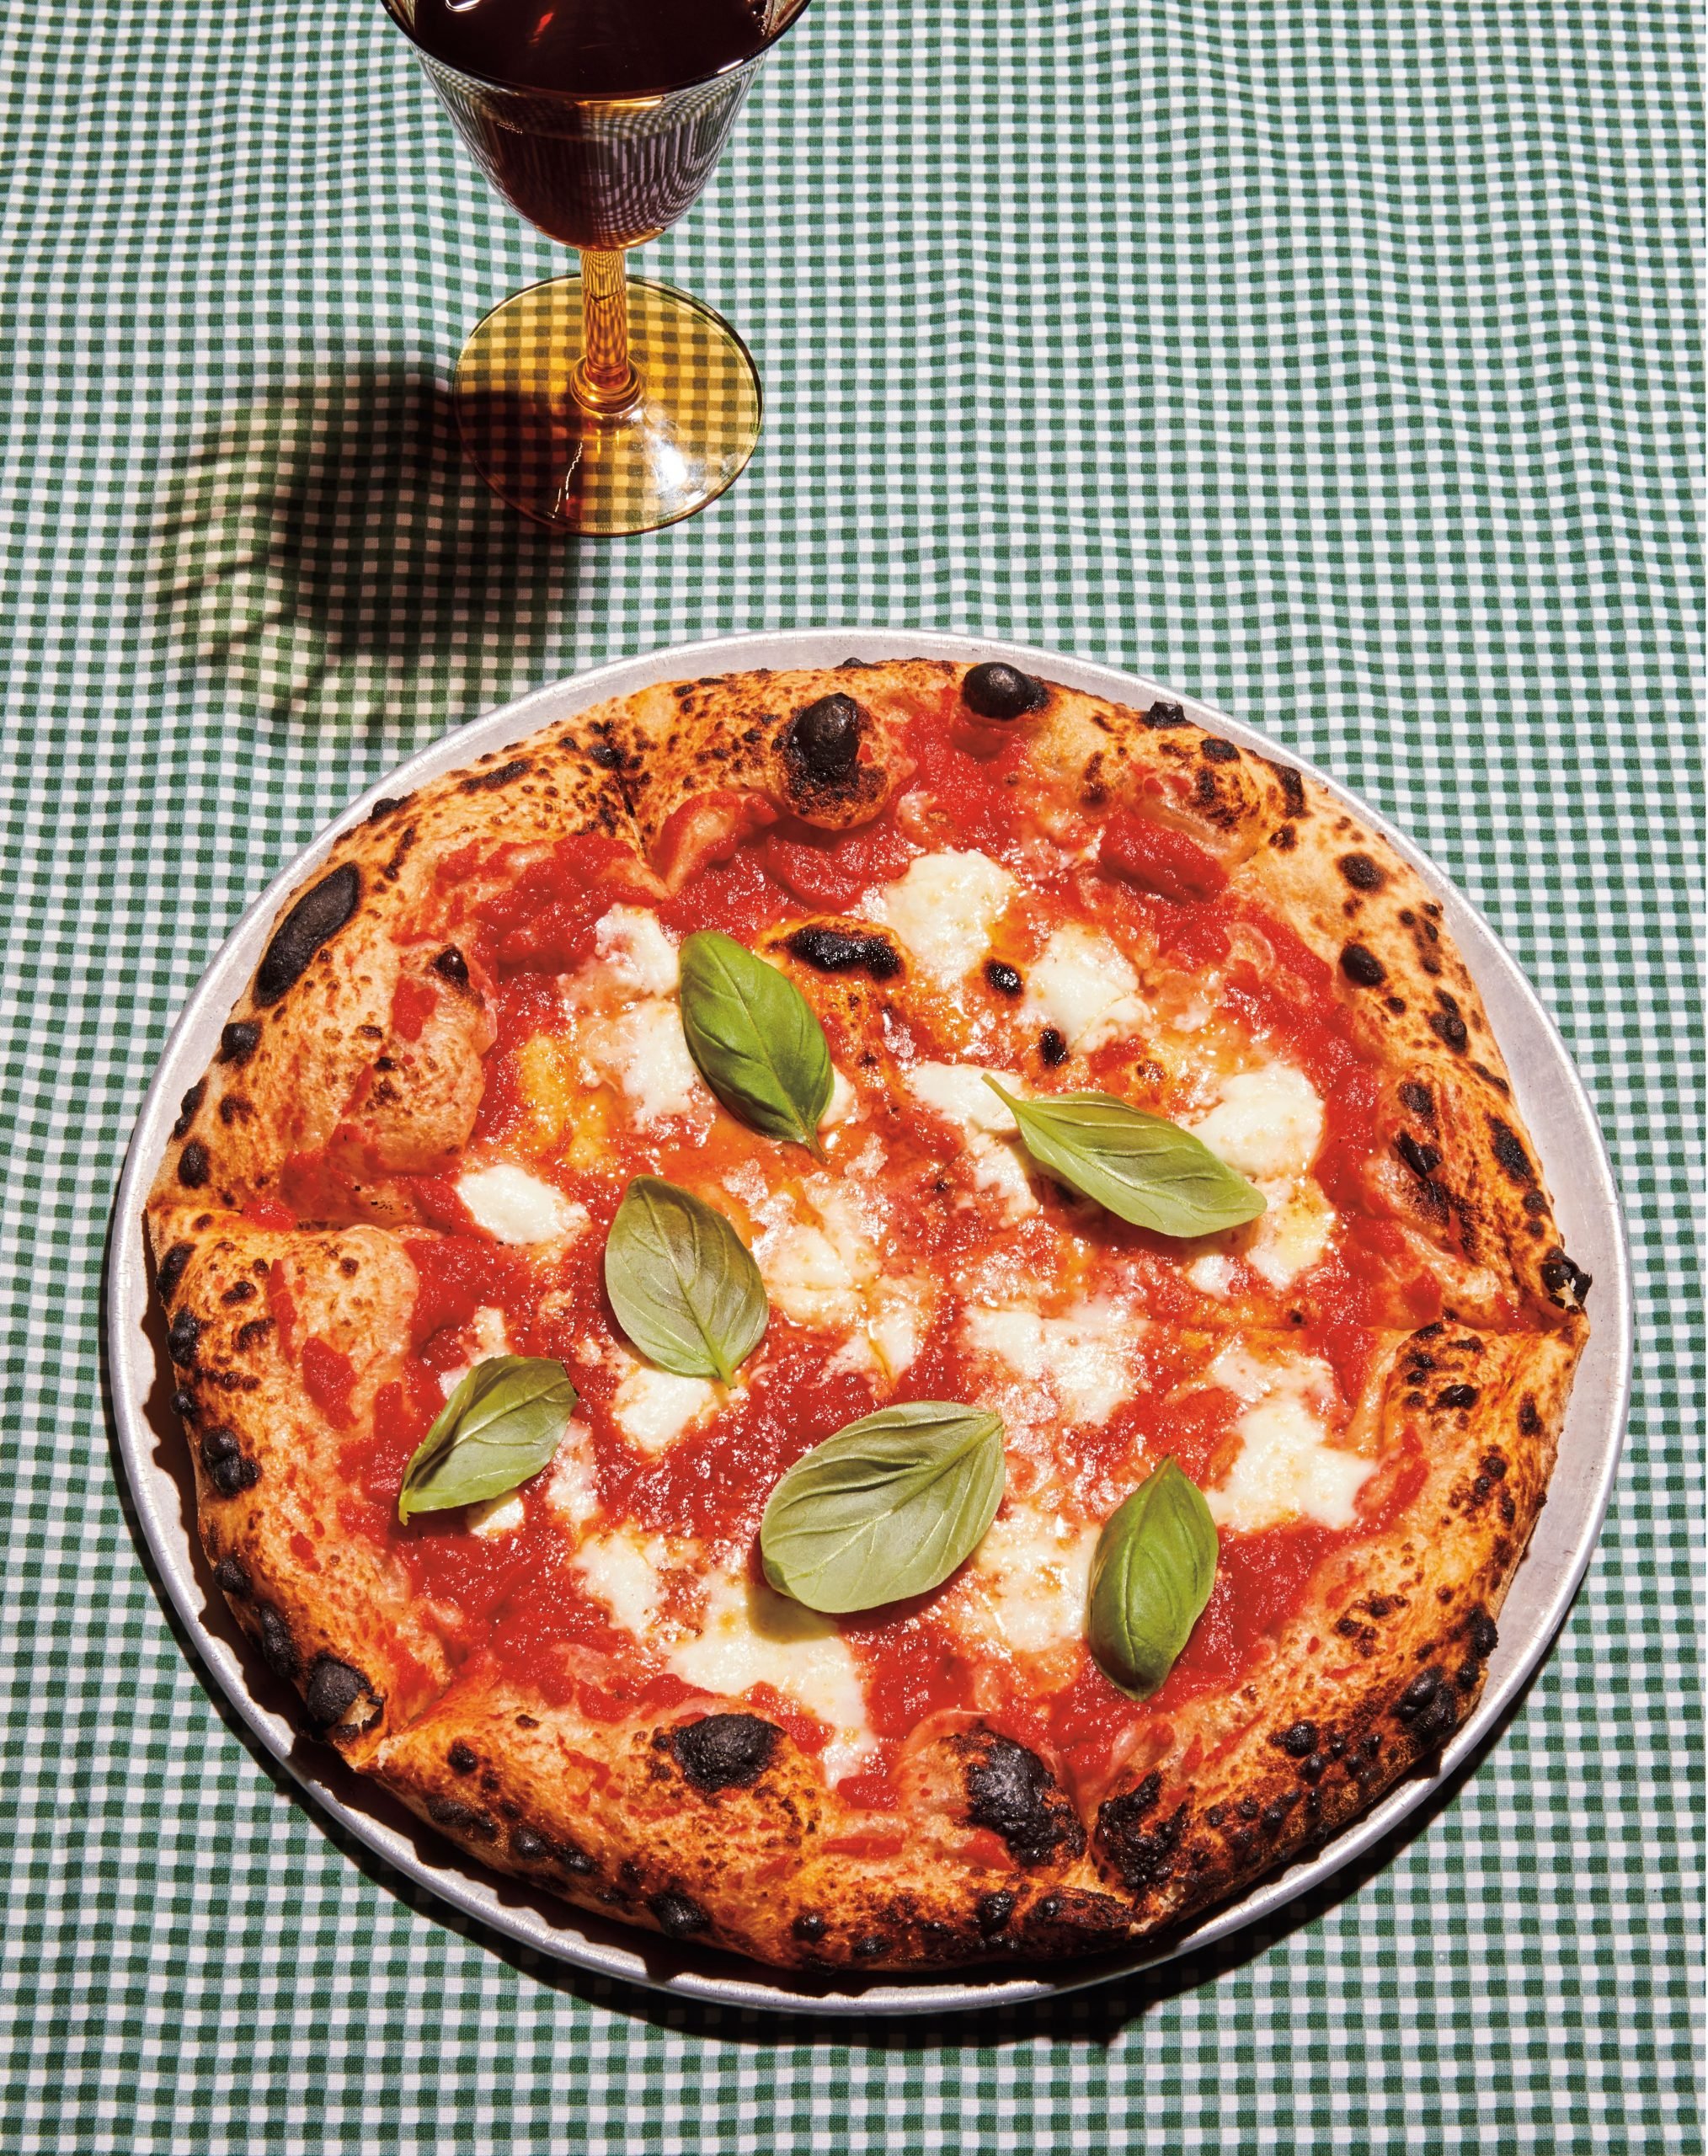 پیتزای کامل مارگریتا روی رومیزی نگین دار سبز رنگ.